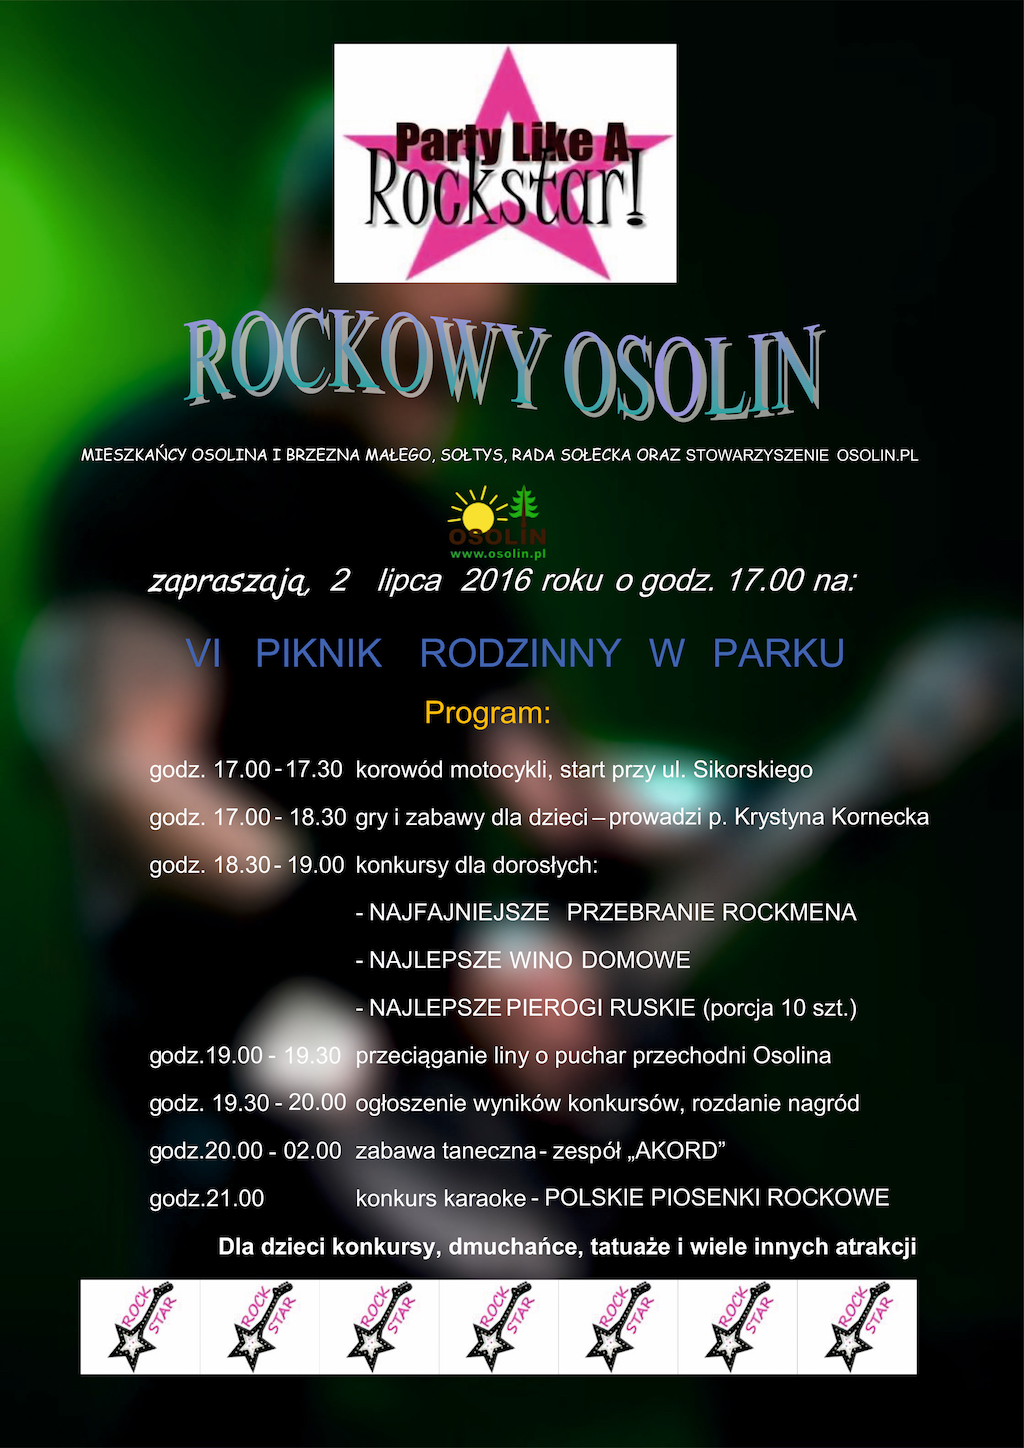 VI RODZINNY PIKNIK W PARKU! Tym razem na Rockowo! 2 lipca 2016